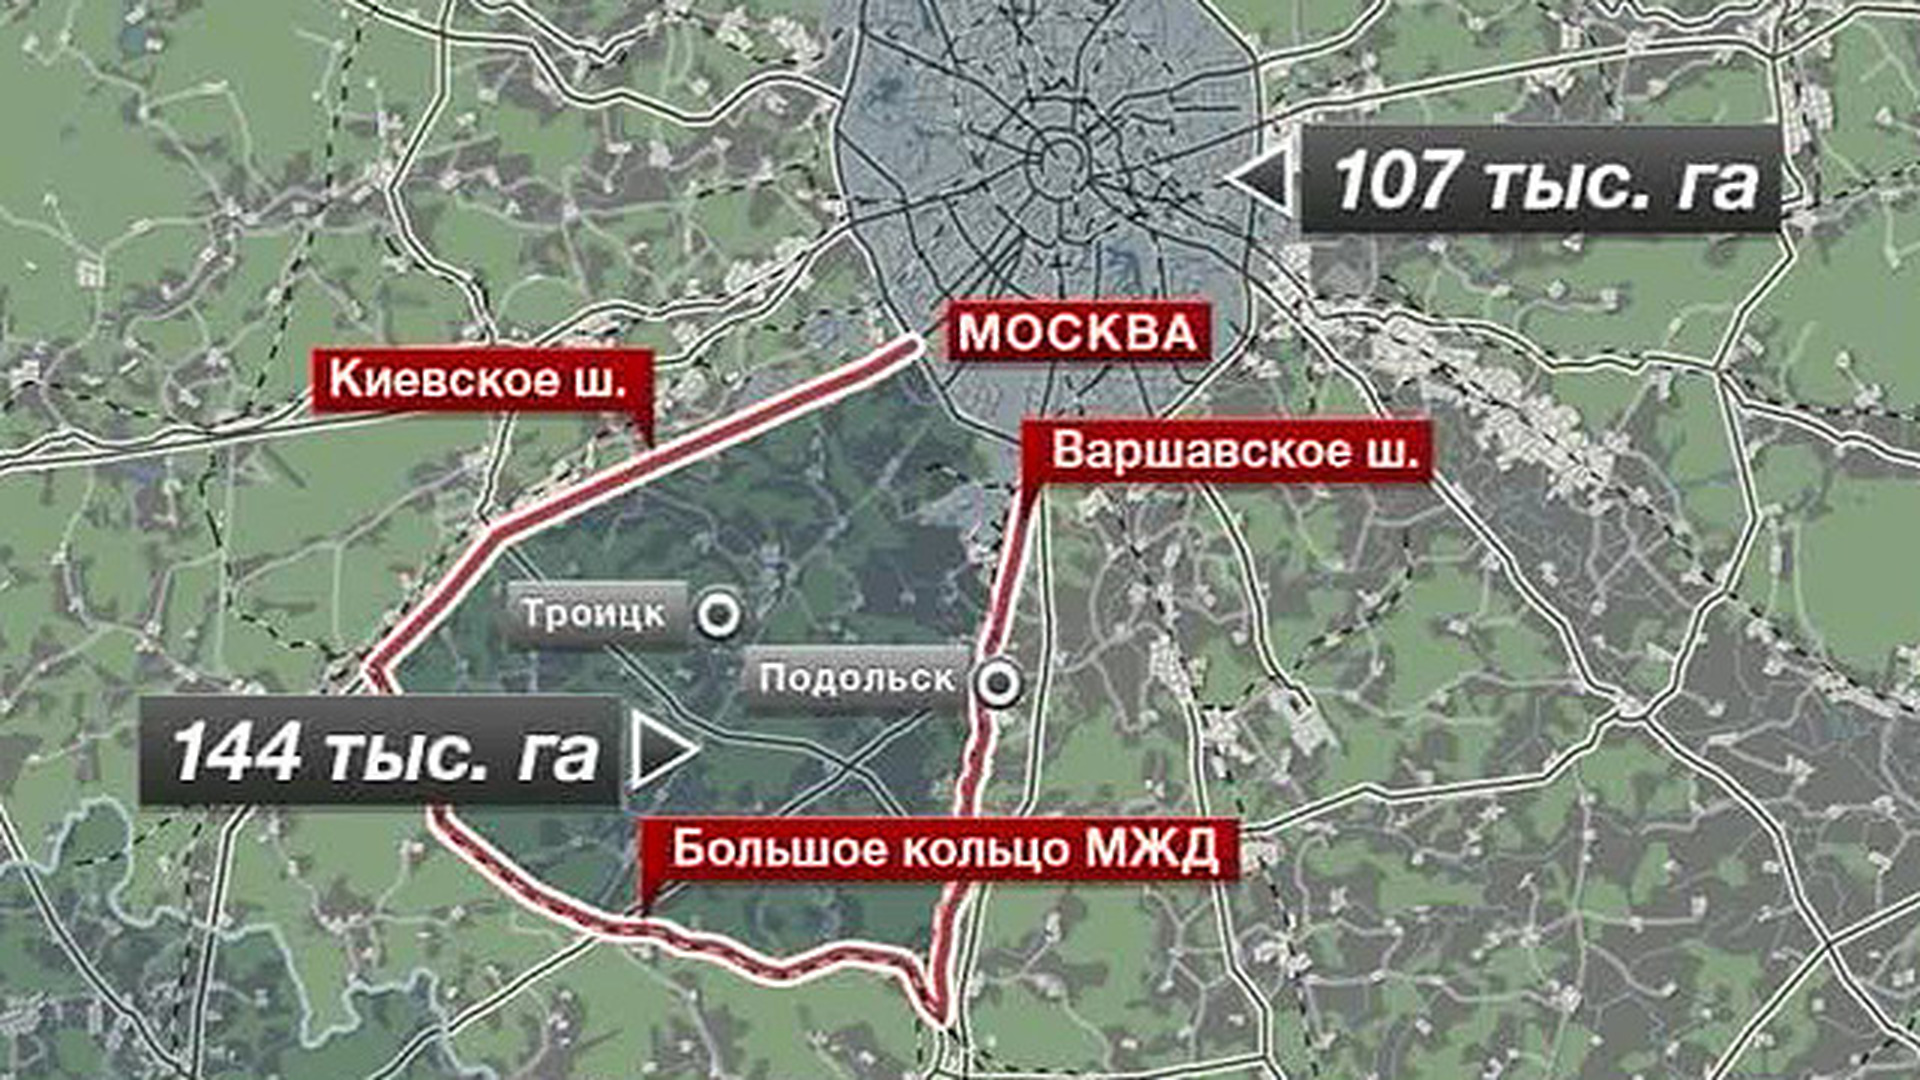 Мамы новой москвы. Новая Москва на карте. Территория Москвы. Расширение Москвы. Территория новой Москвы на карте.